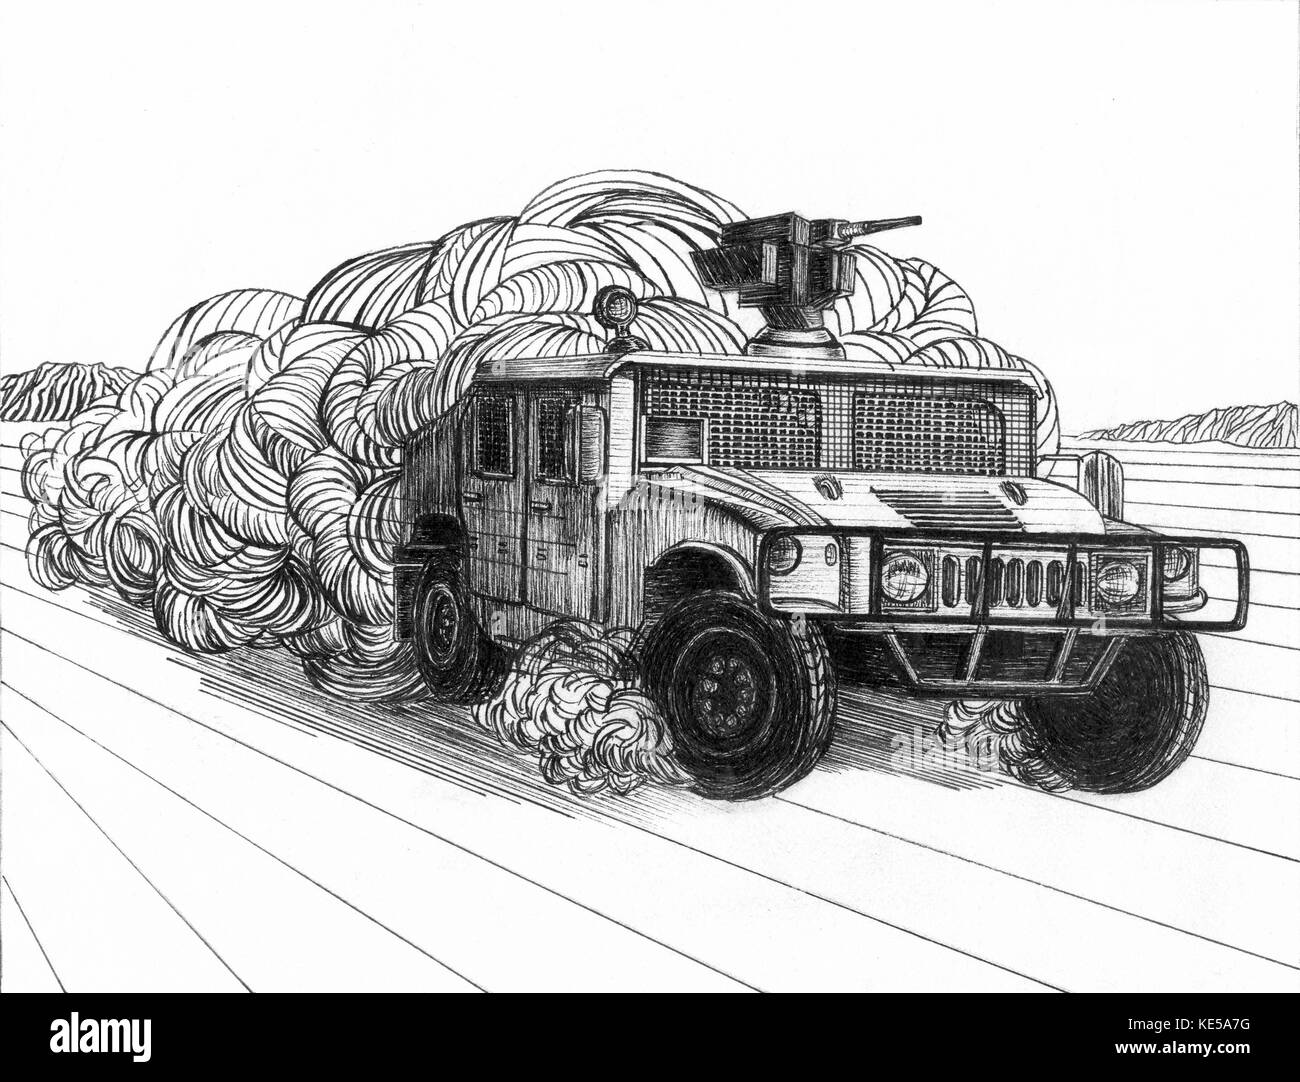 Disegno a inchiostro di un Humvee la guida su un percorso polveroso. Foto Stock